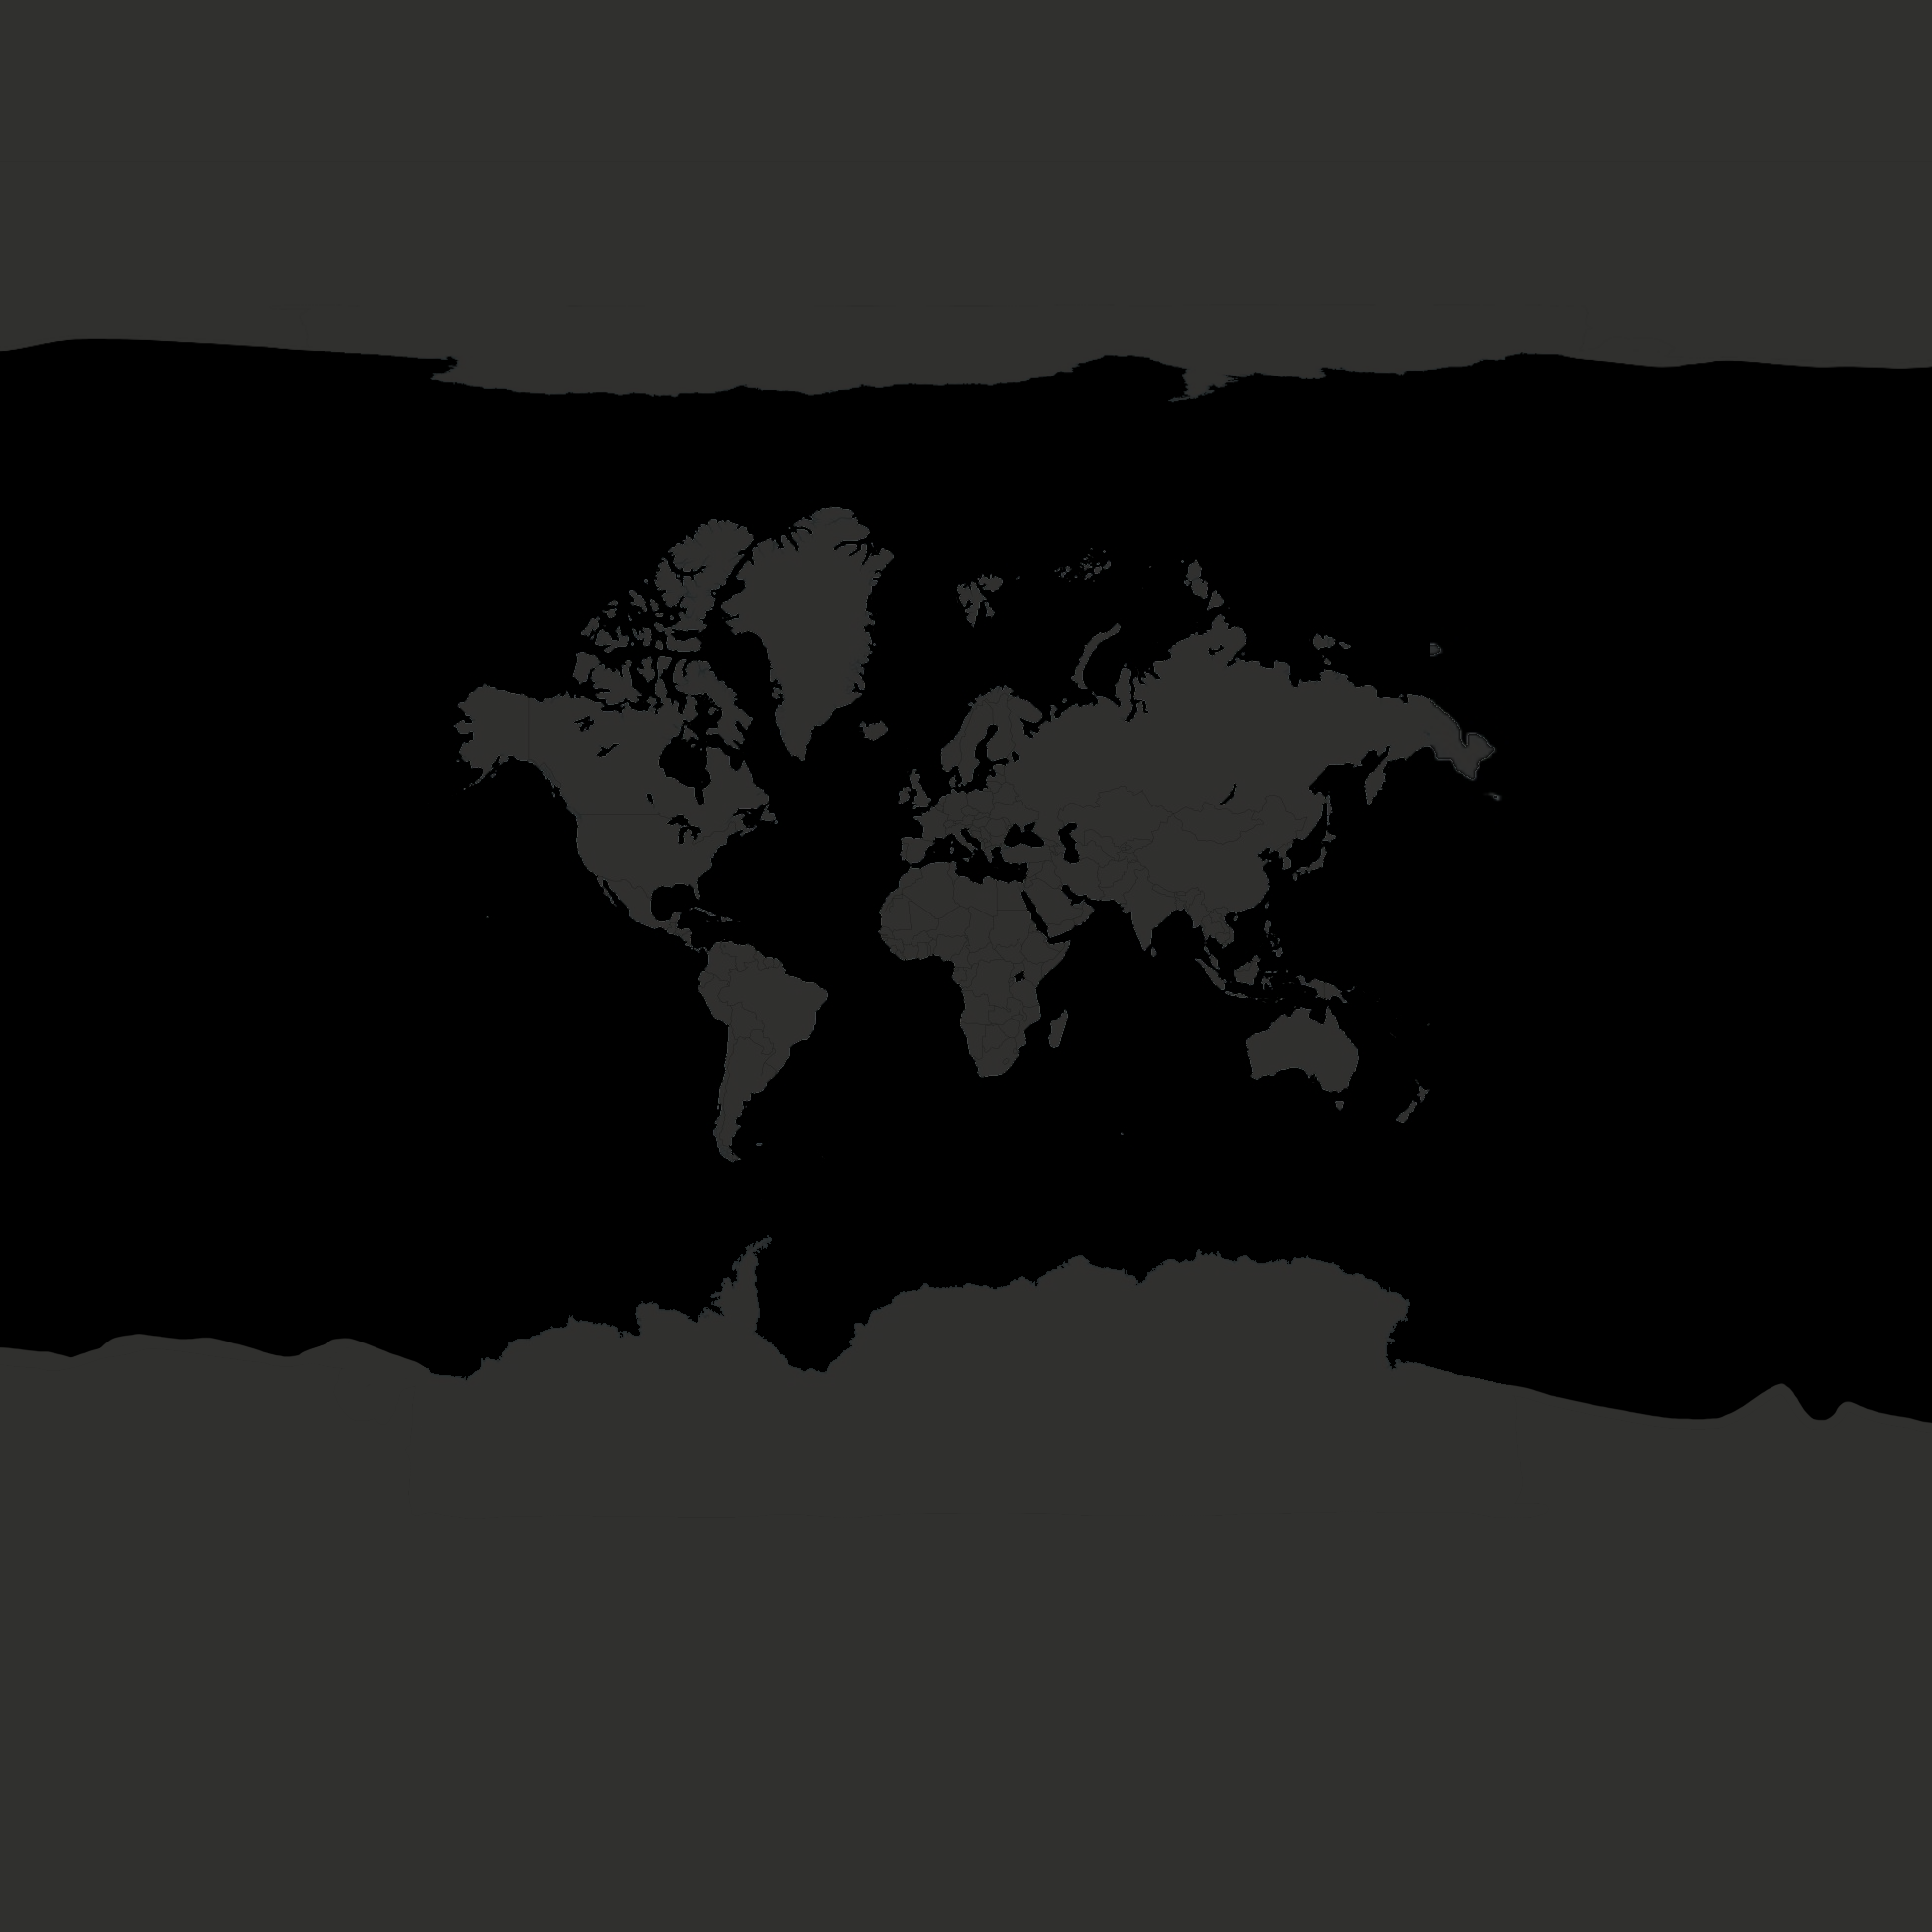 Angepasste Weltkarte von OpenStreetMap in schwarz und grau